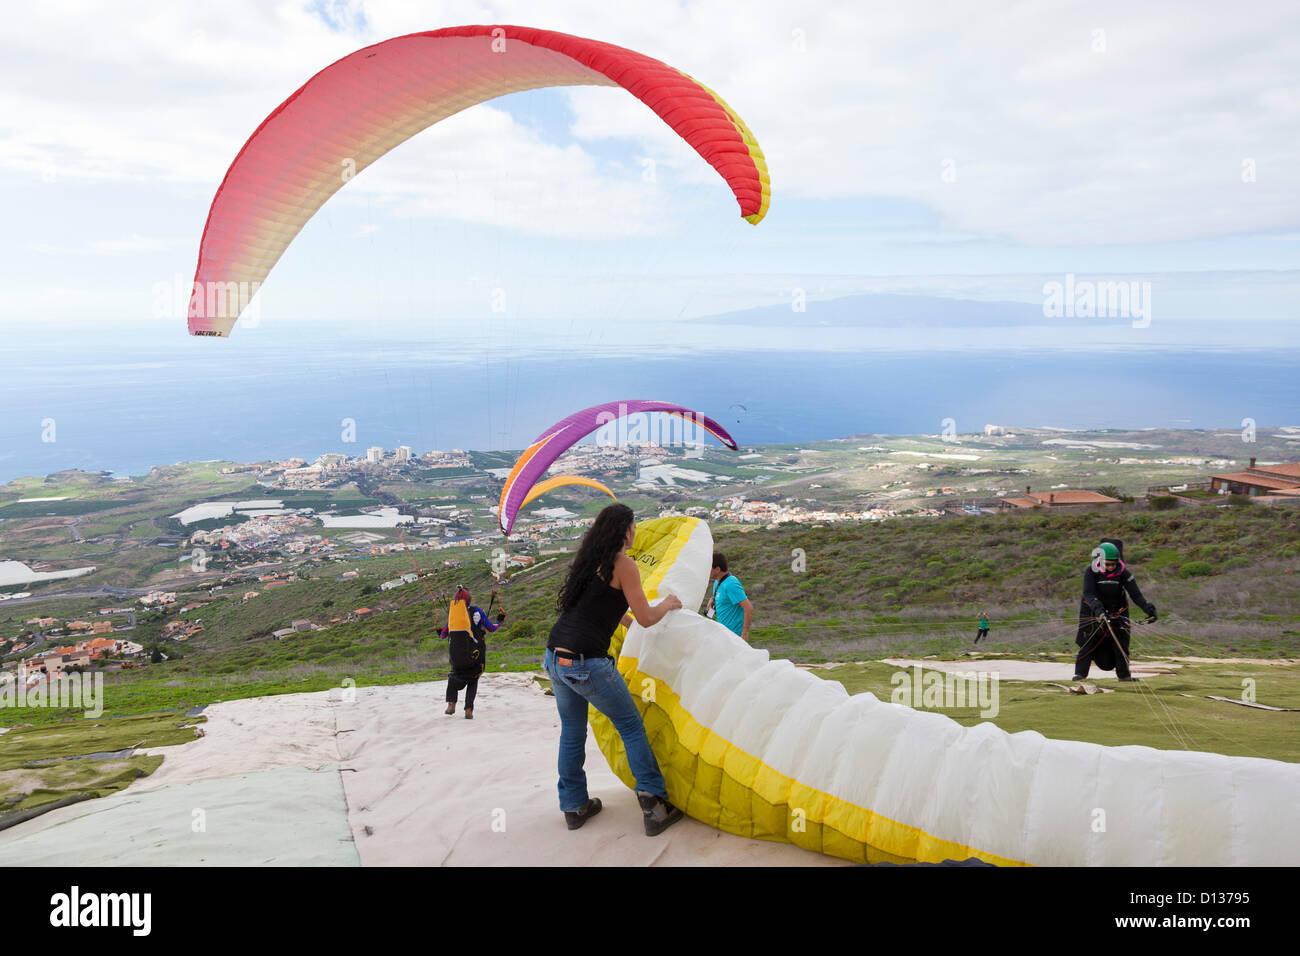 Competidores a punto de saltar por encima de la costa en el Parascending internacional abierto a la competencia en Adeje, Tenerife, Islas Canarias. Del 6 al 9 de diciembre de 2012. 110 competidores de 14 nacionalidades están tomando parte en el evento. Foto de stock